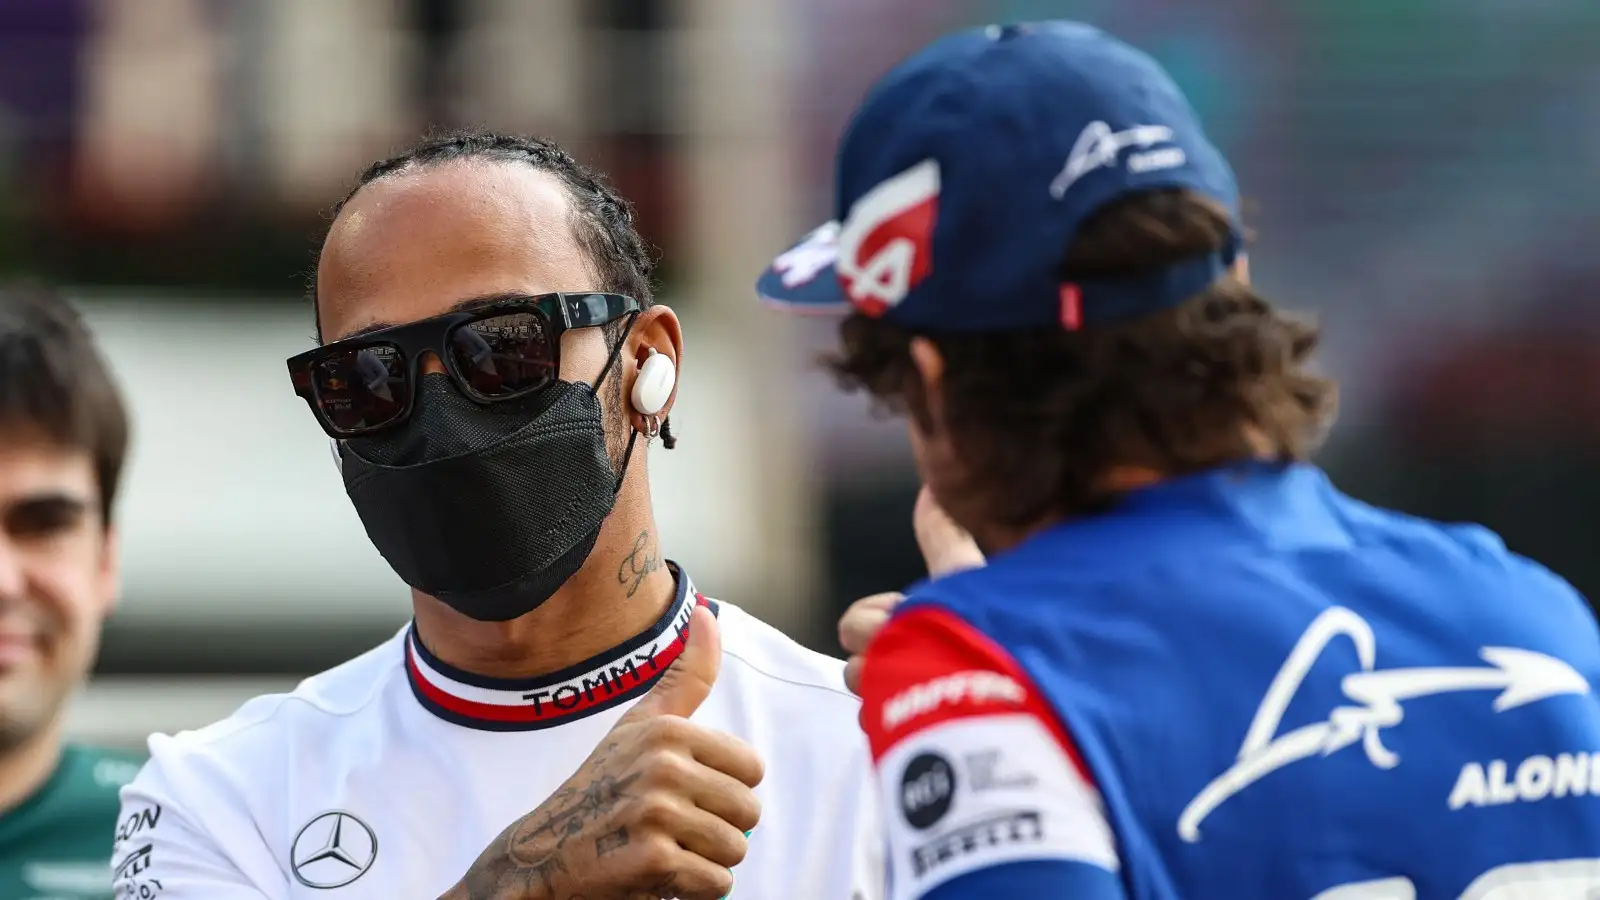 Lewis Hamilton and Fernando Alonso. Abu Dhabi, December 2021.